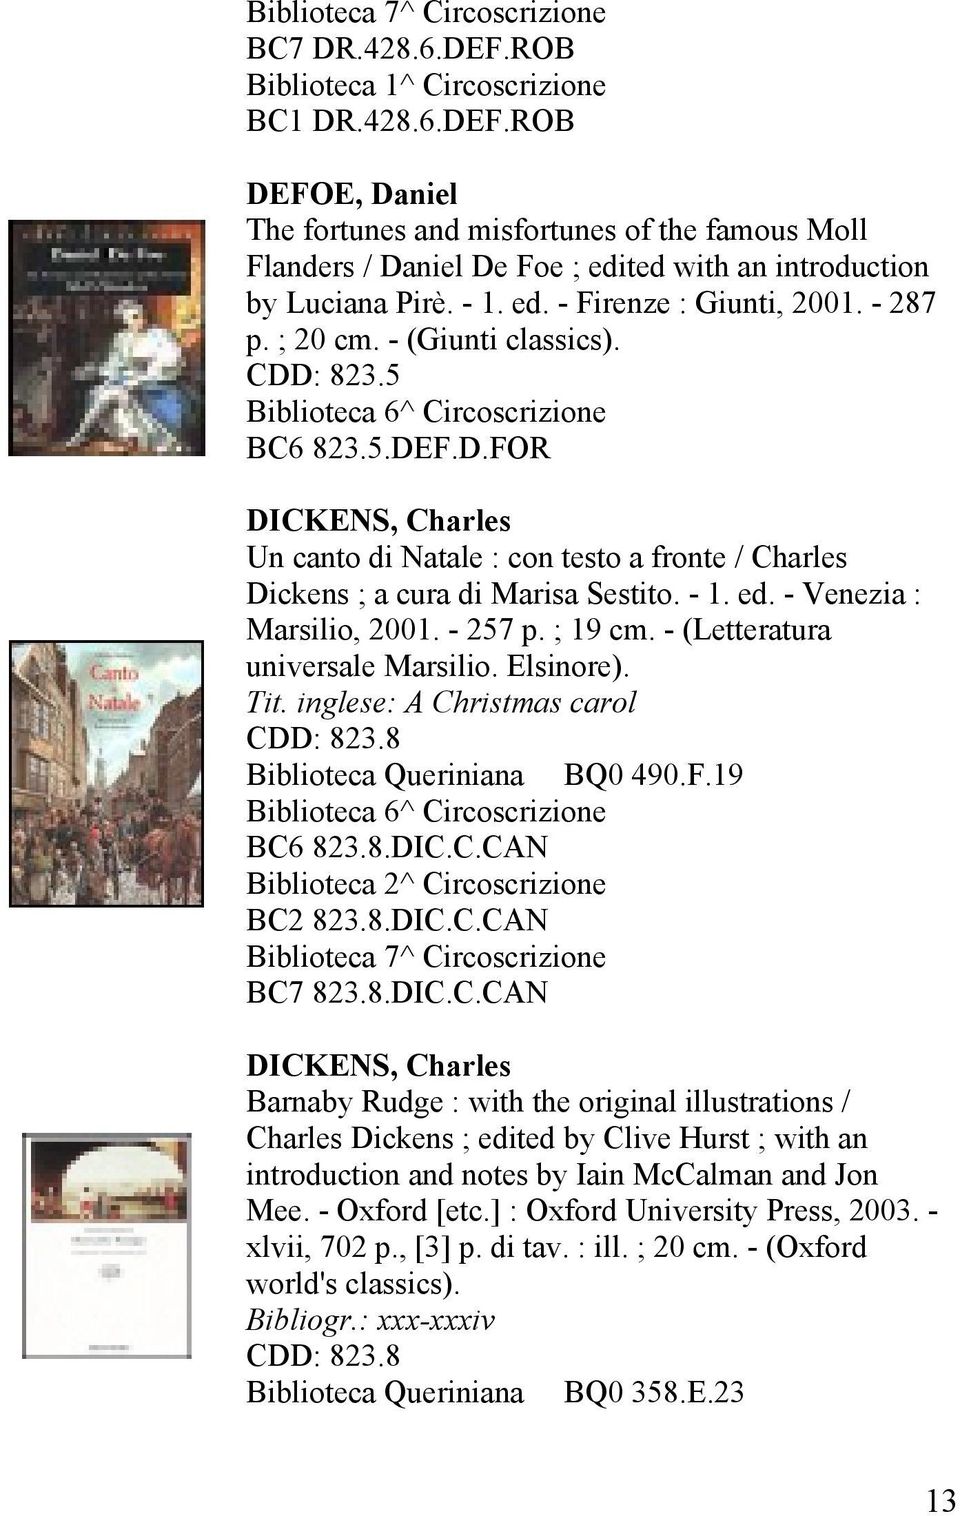 - 1. ed. - Venezia : Marsilio, 2001. - 257 p. ; 19 cm. - (Letteratura universale Marsilio. Elsinore). Tit. inglese: A Christmas carol CDD: 823.8 BQ0 490.F.19 Biblioteca 6^ Circoscrizione BC6 823.8.DIC.